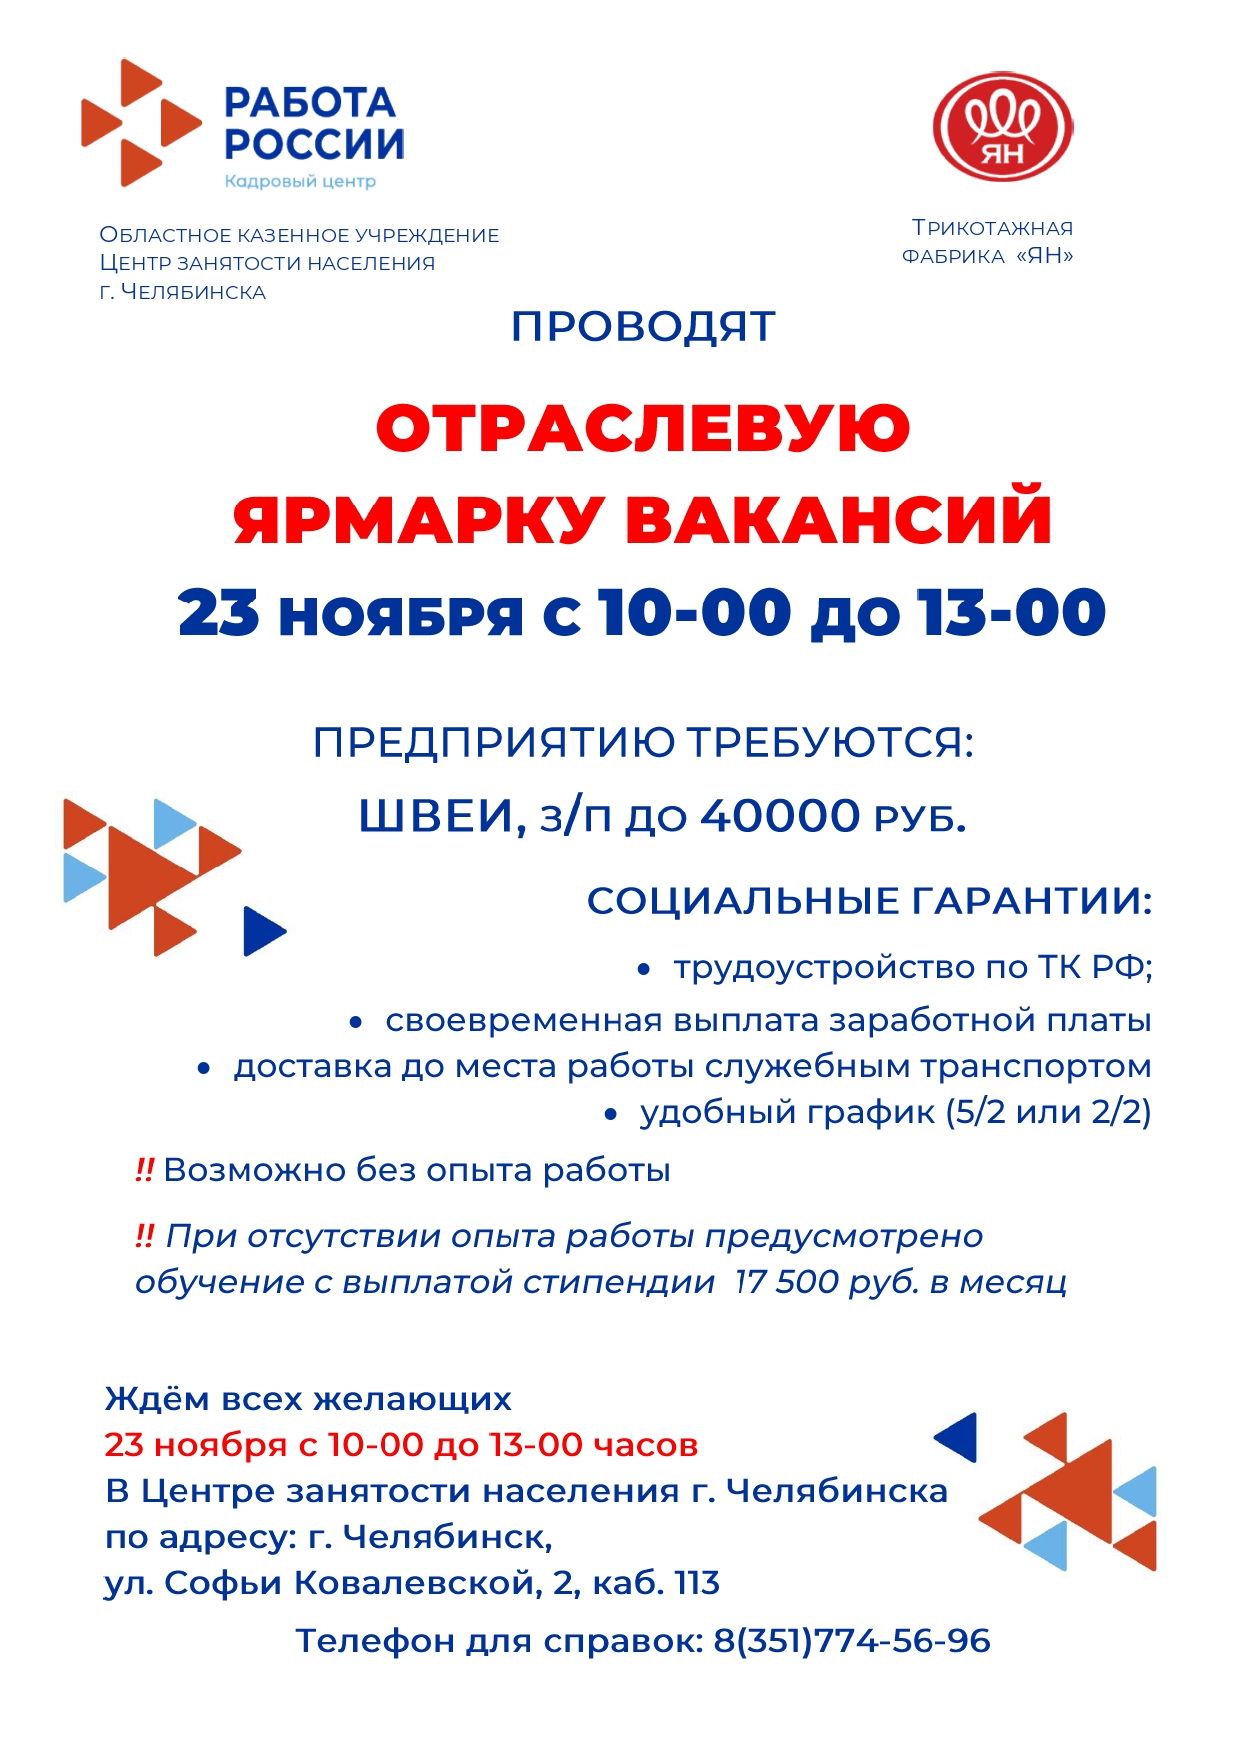 Центр занятости Челябинска приглашает на отраслевую ярмарку вакансий